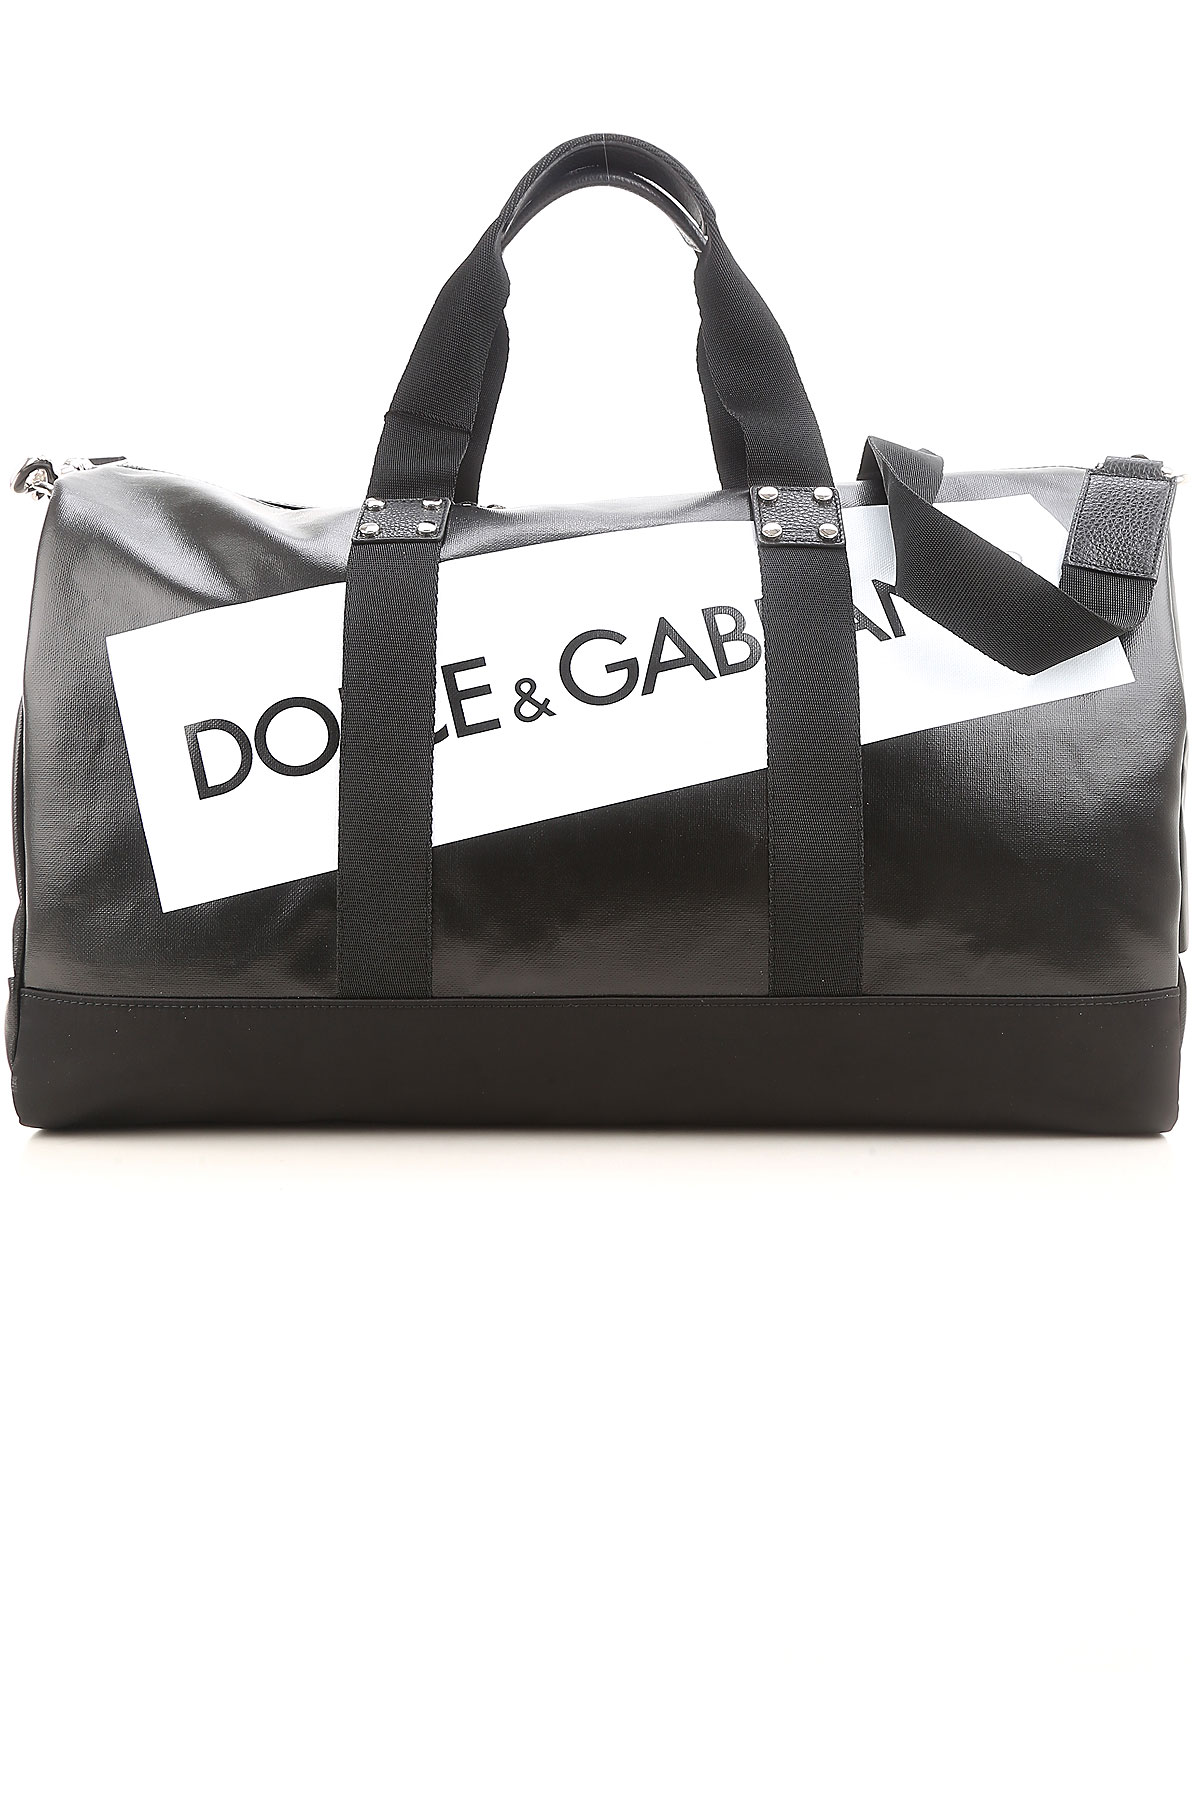 Dolce & Gabbana Sac de Voyage Homme - Sac de Sport, Noir, Cuir, 2017